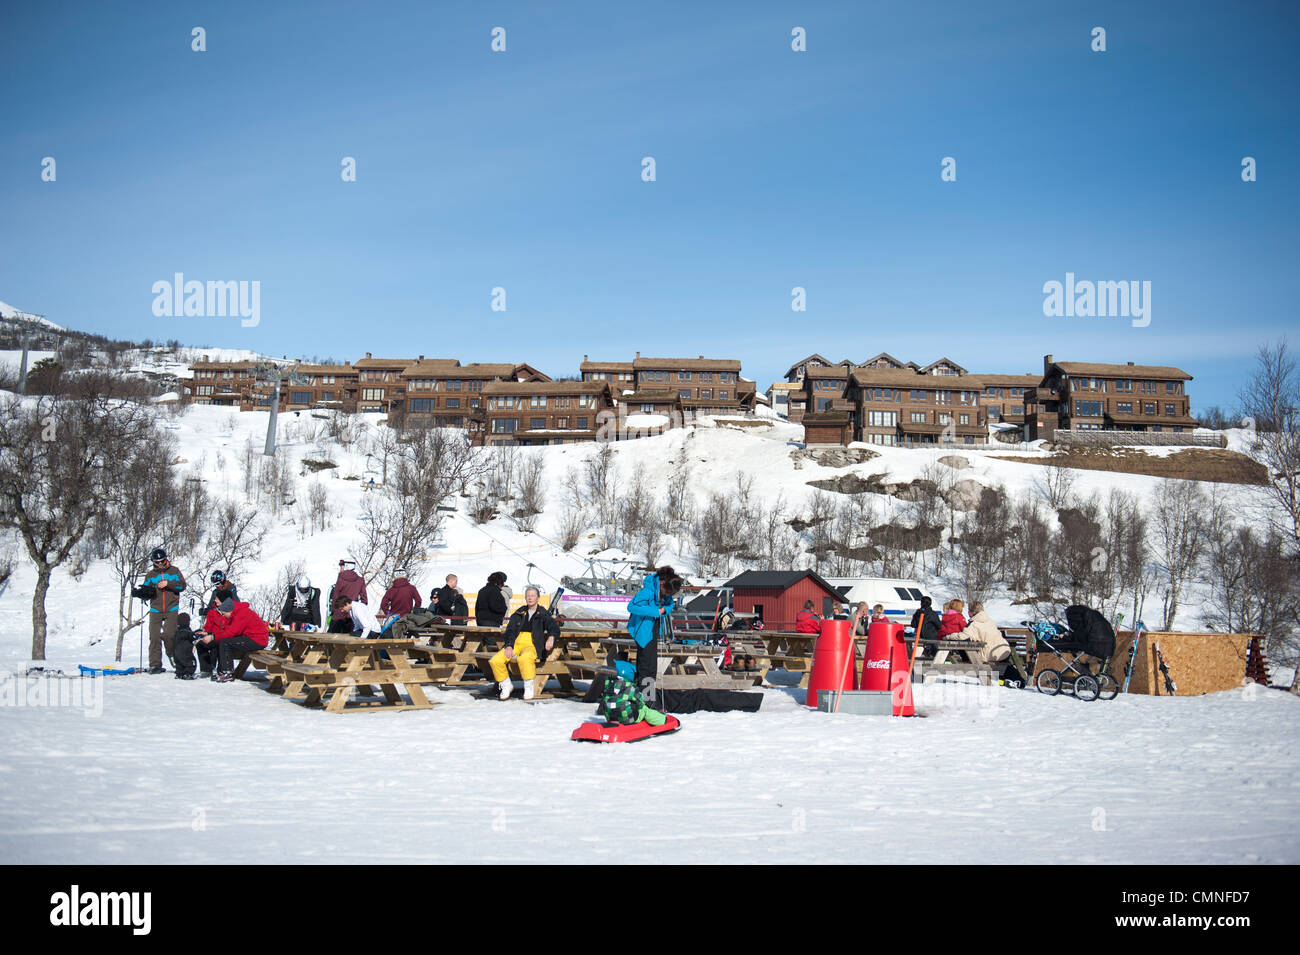 Aprire-ari sosta in corrispondenza della stazione di base di Hovden skisenter, una stazione sciistica in Norvegia del sud con cappio mountain al suo cuore Foto Stock